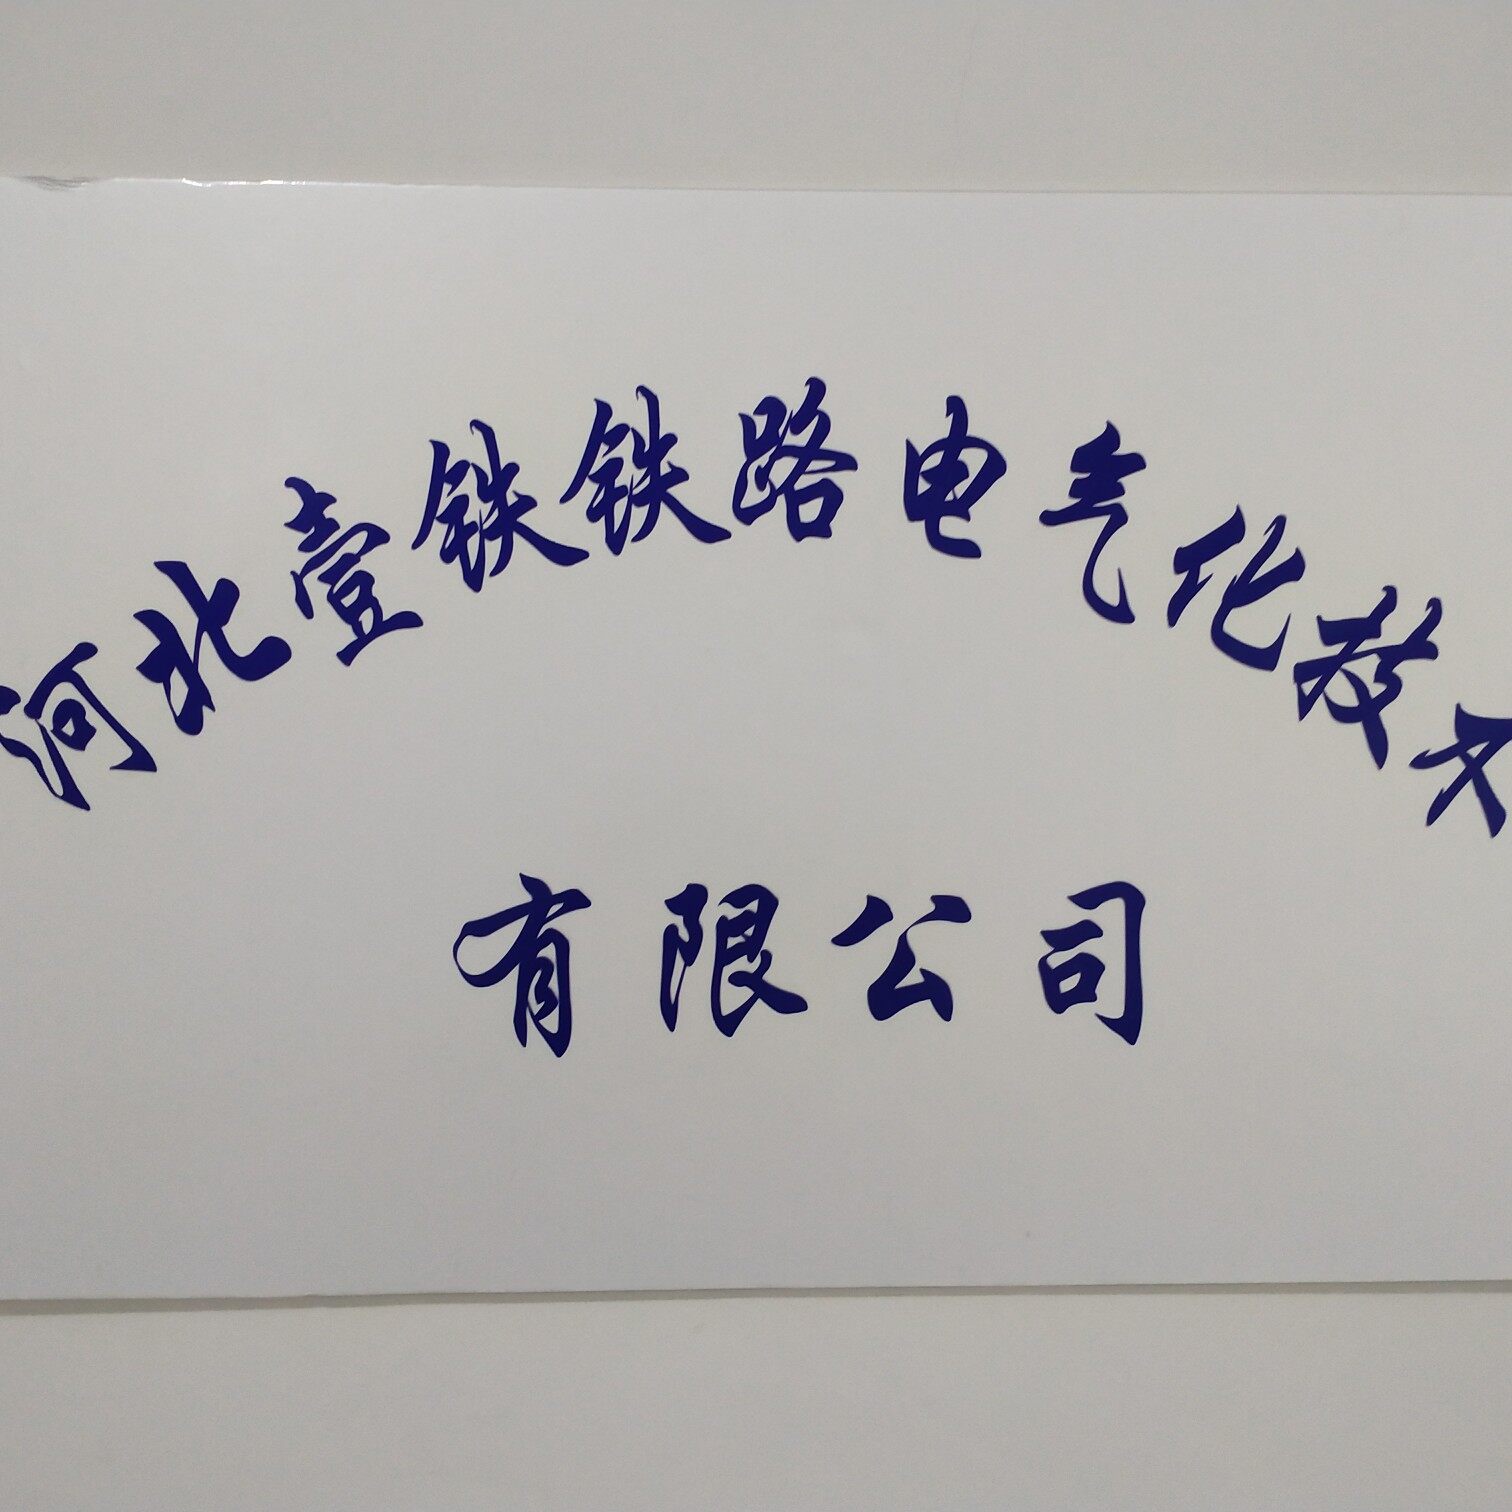 河北壹铁铁路电气化技术有限公司logo